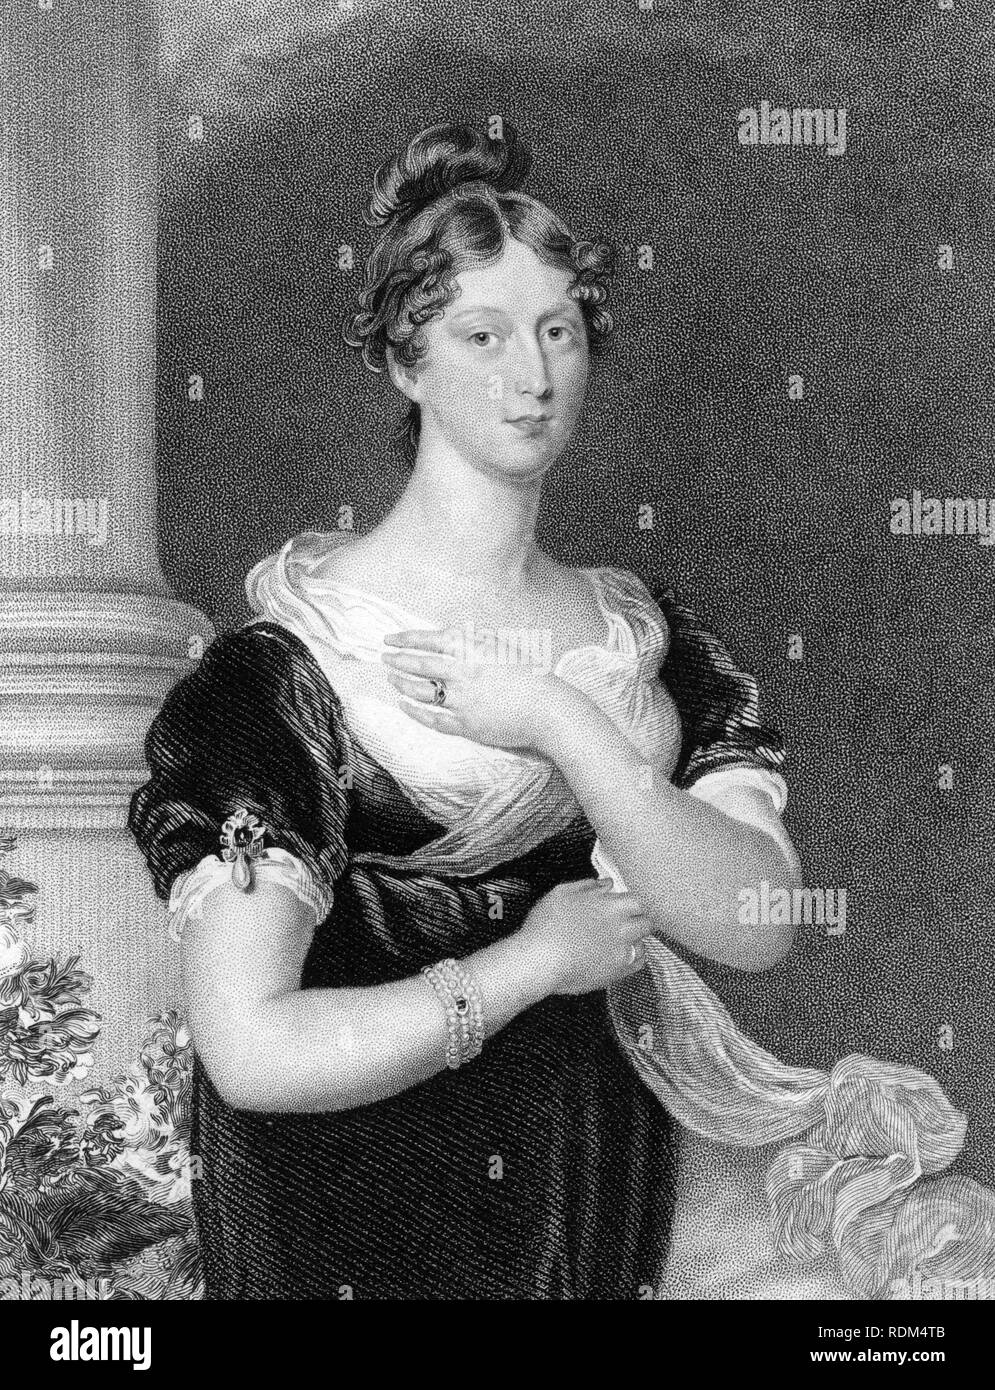 La princesa Carlota Augusta de Gales, un grabado basado en una pintura de Sir Thomas Lawrence antes de morir en el parto en 1817 a los 21 años de edad, pero esta versión publicada en 1832. Su muerte, alentó al posterior matrimonio que llevó a Victoria tomando el trono británico Foto de stock